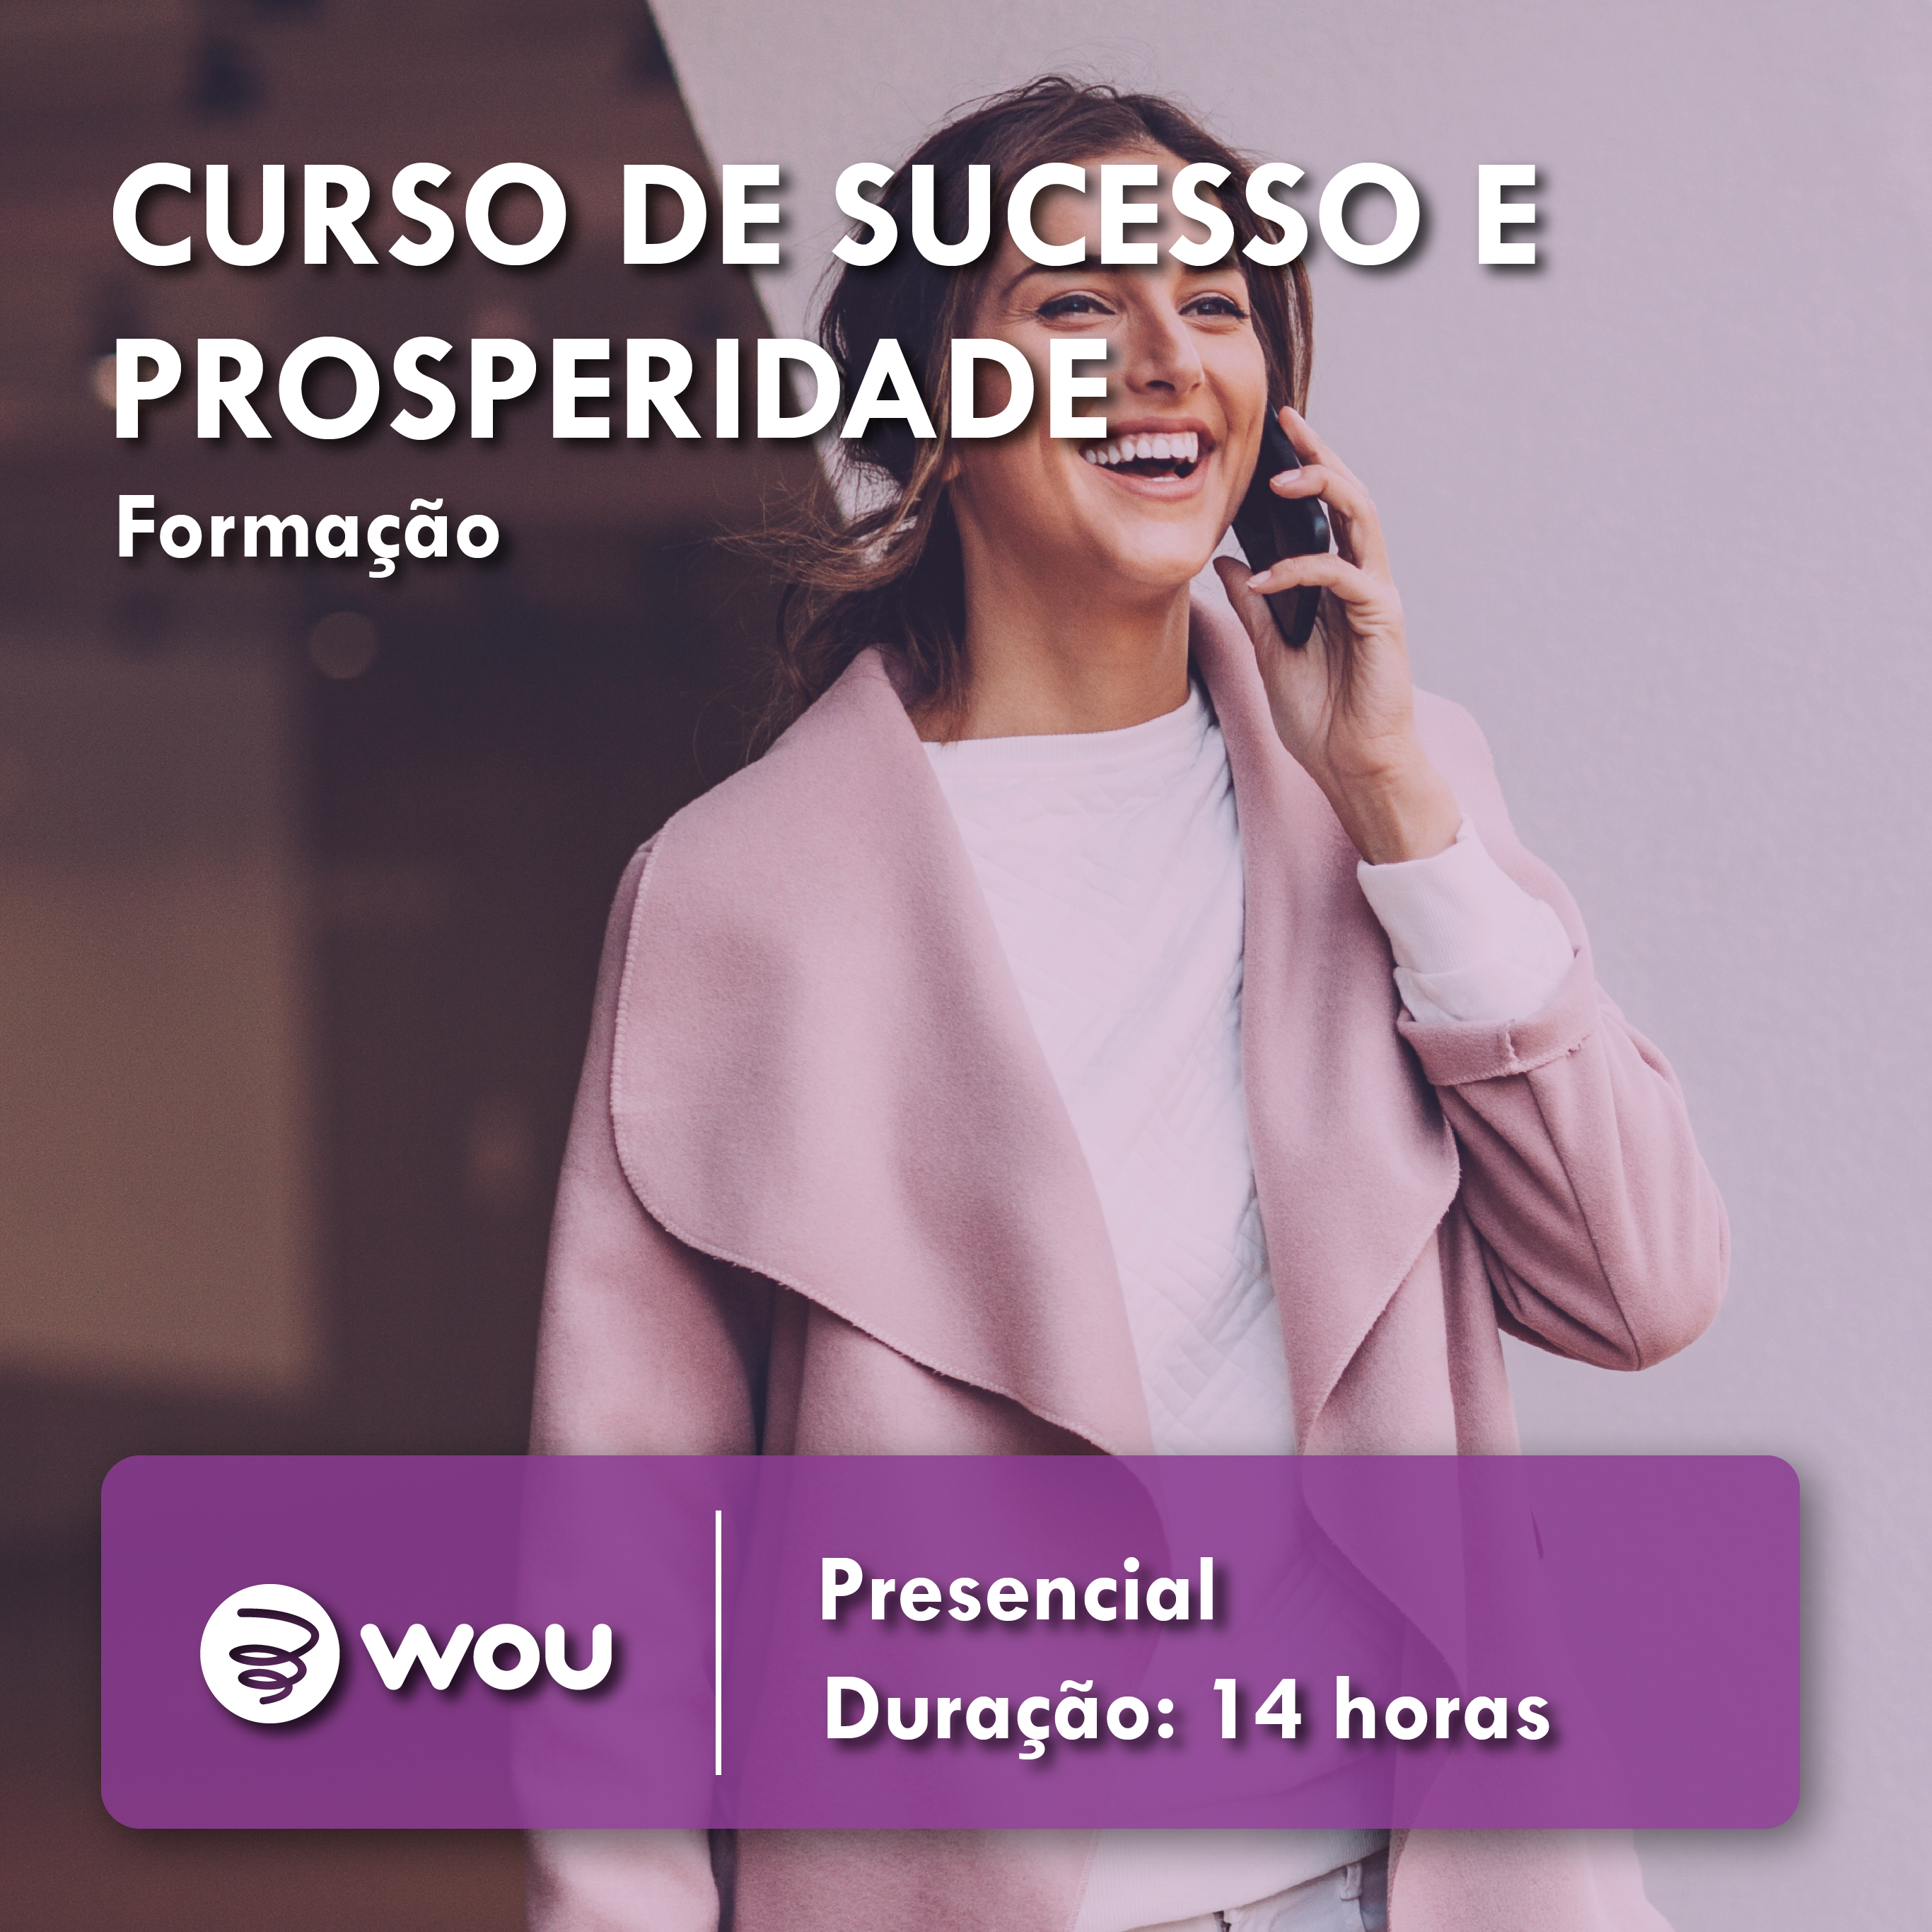 Success and Prosperity Course in Porto